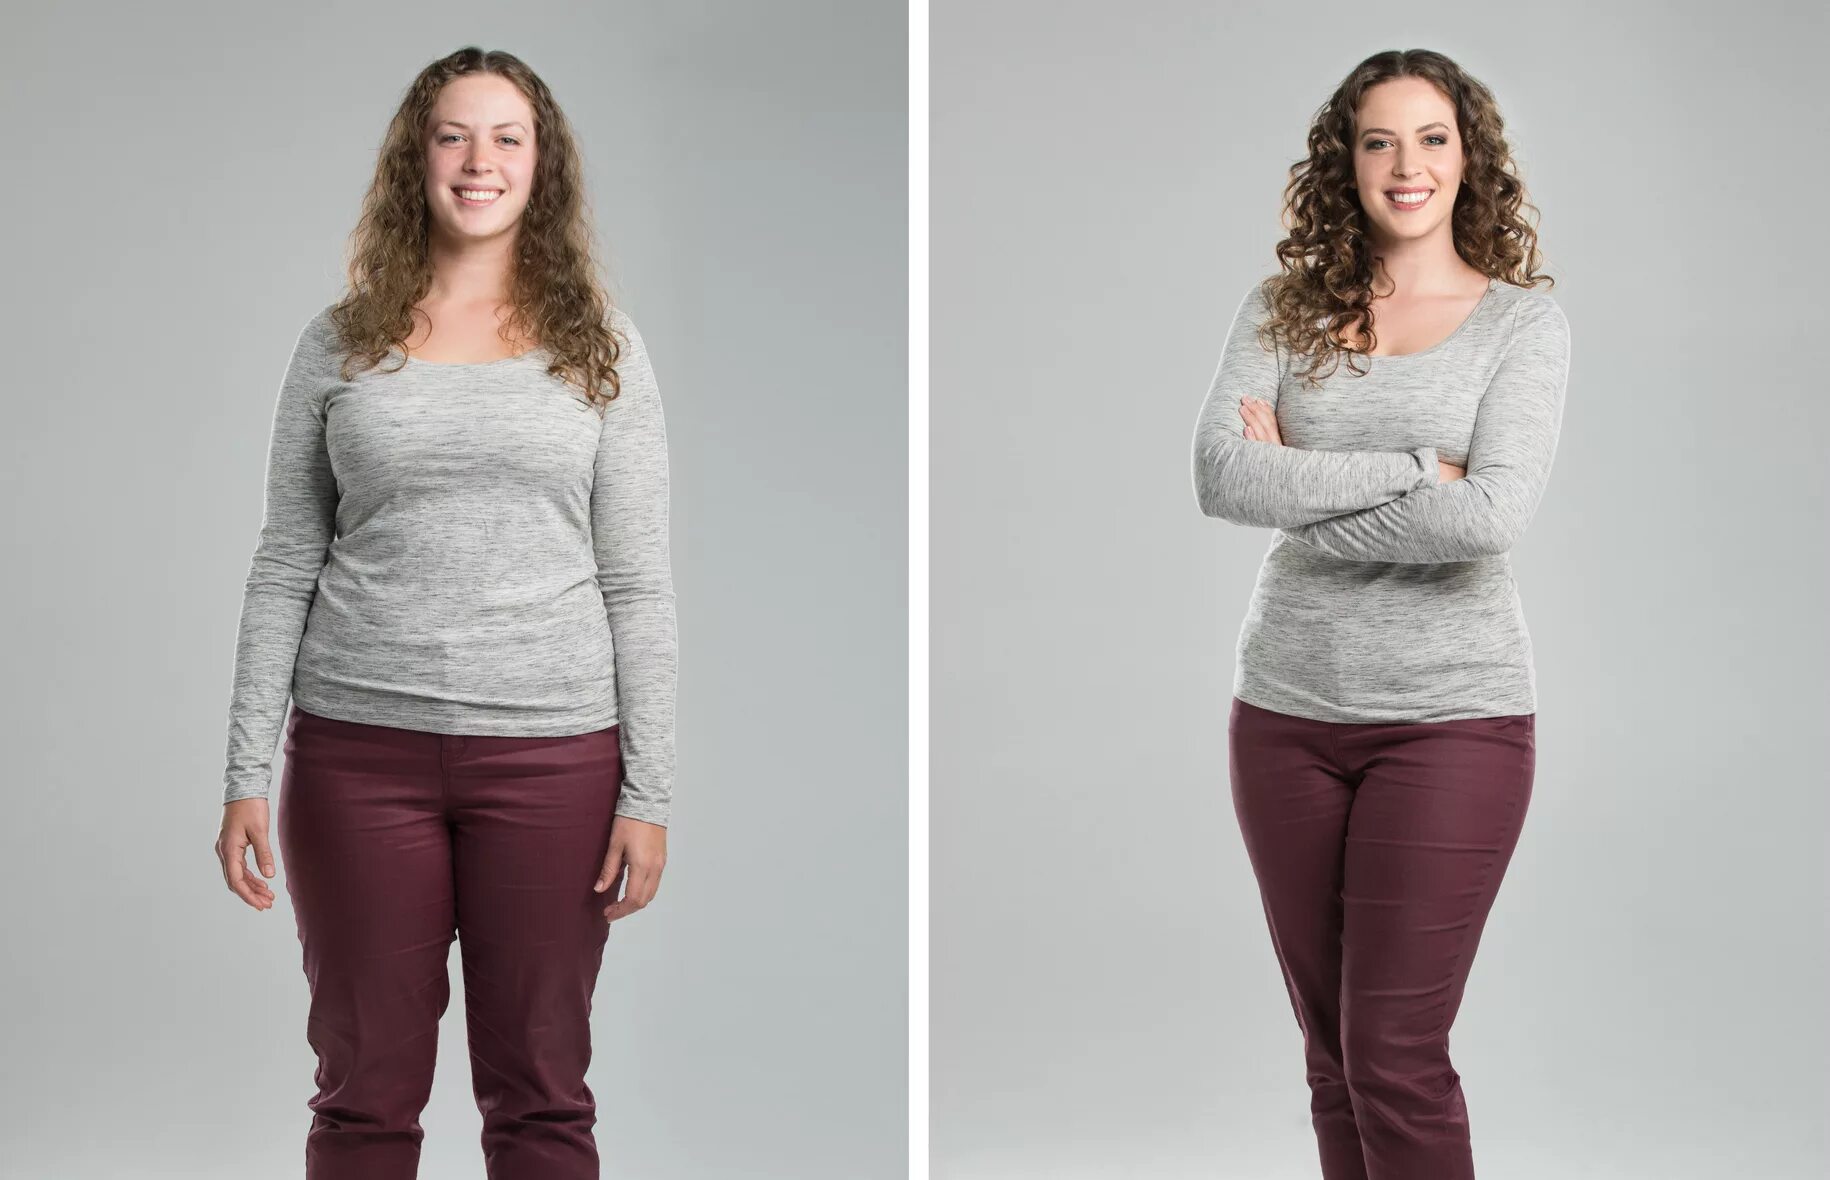 Похудение до и после. До и после похудения девушки. Фотосессия профессиональная до и после похудения. Похудение до и после фото.